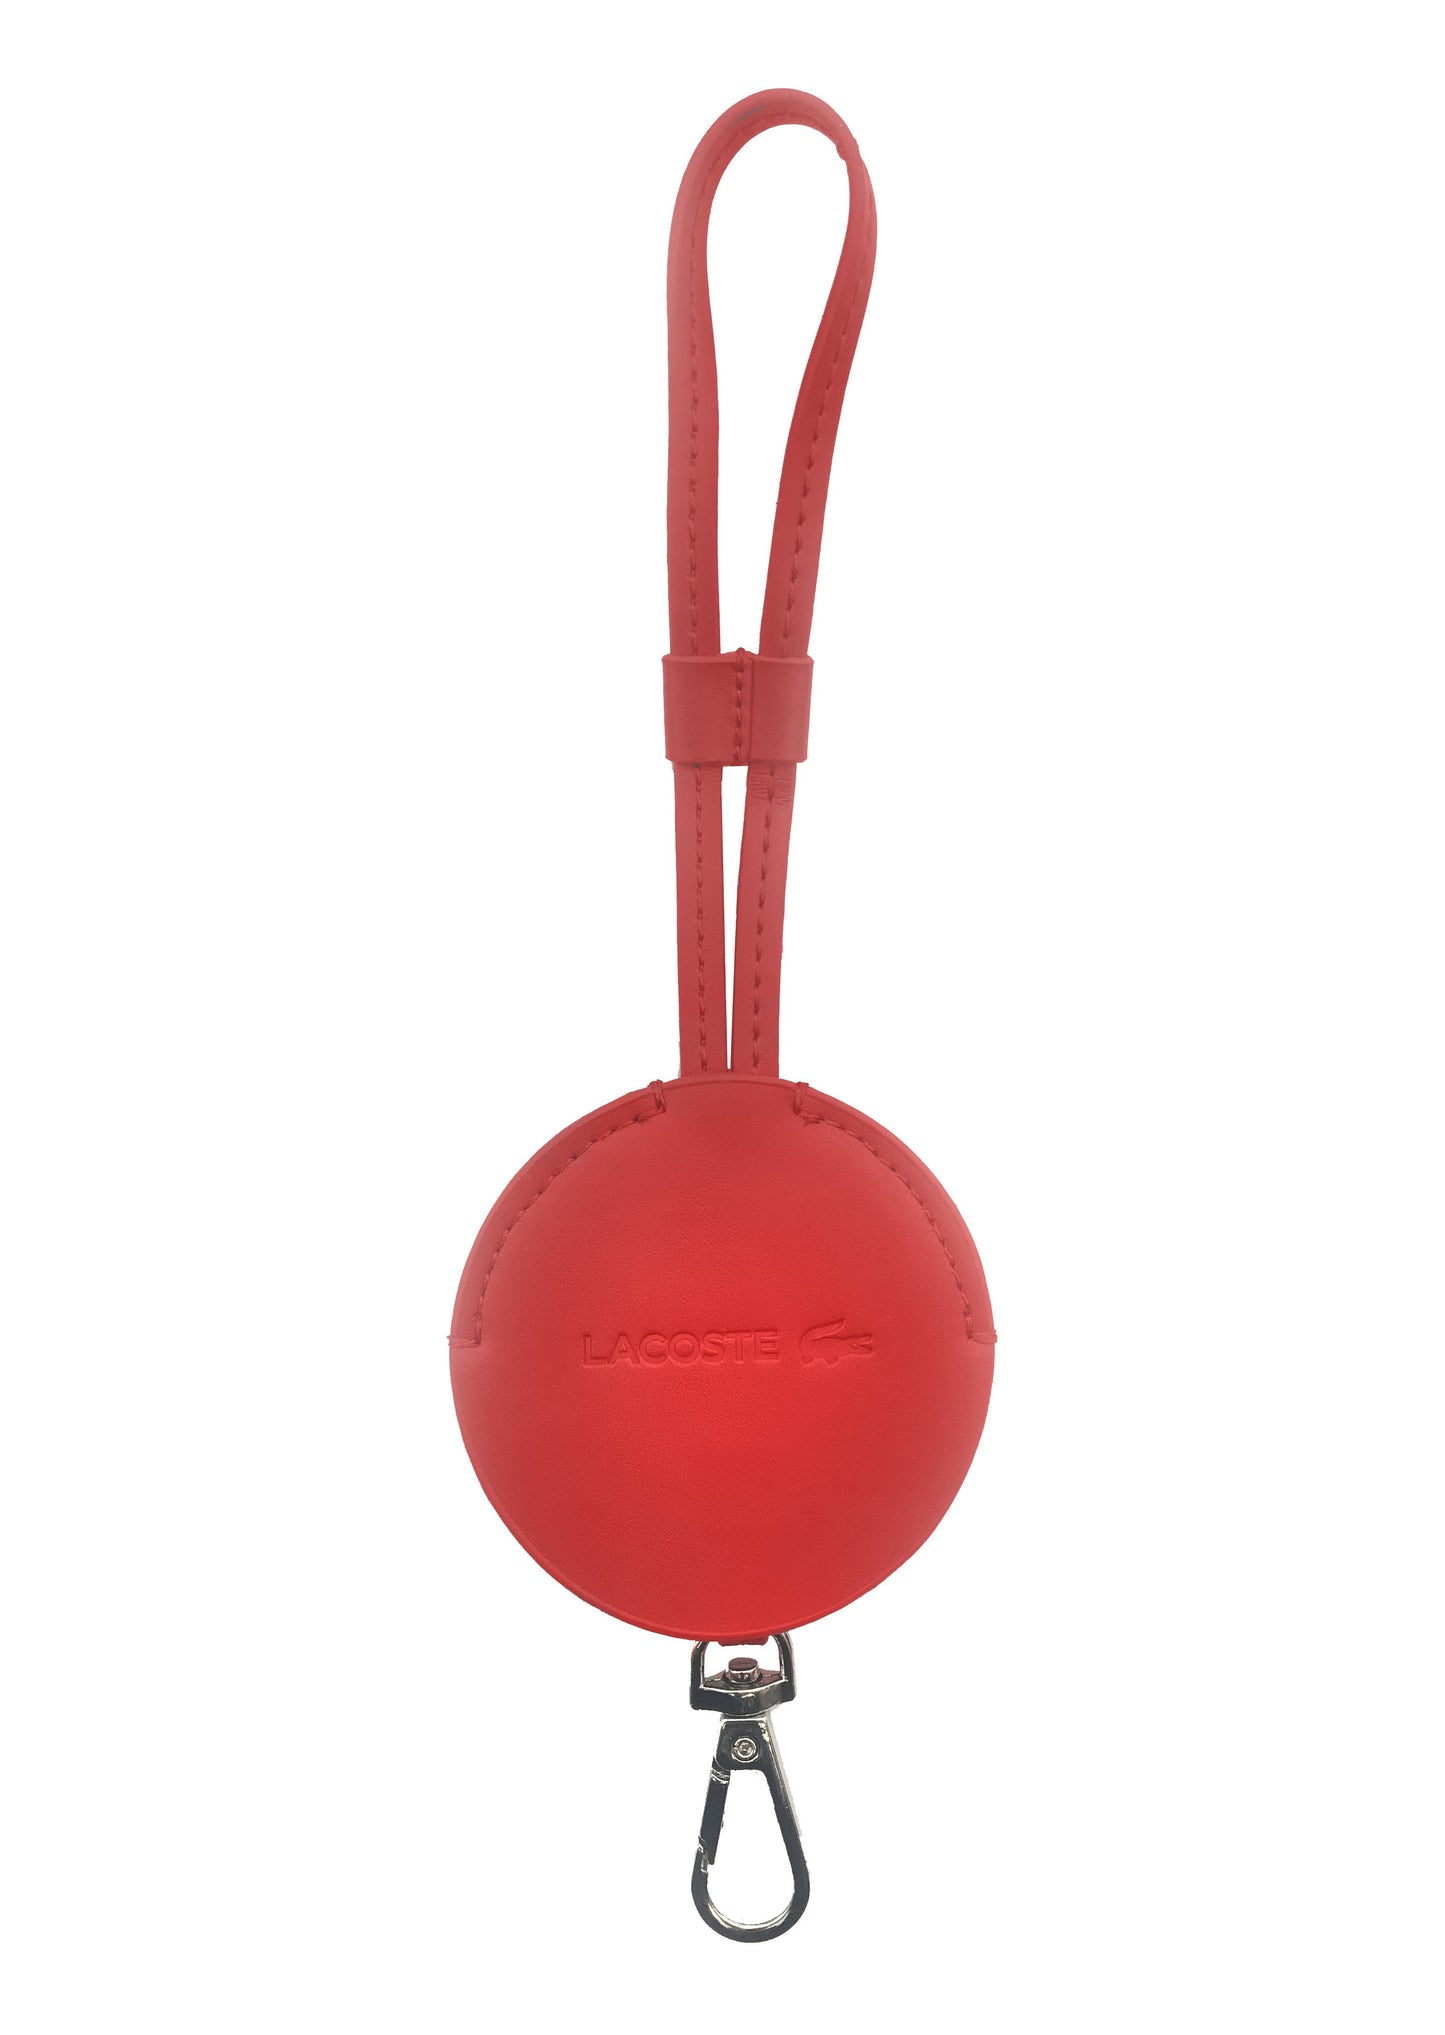 Porte Clé Lacosre De Couleur Rouge (Laco-Portecle) Accessoires